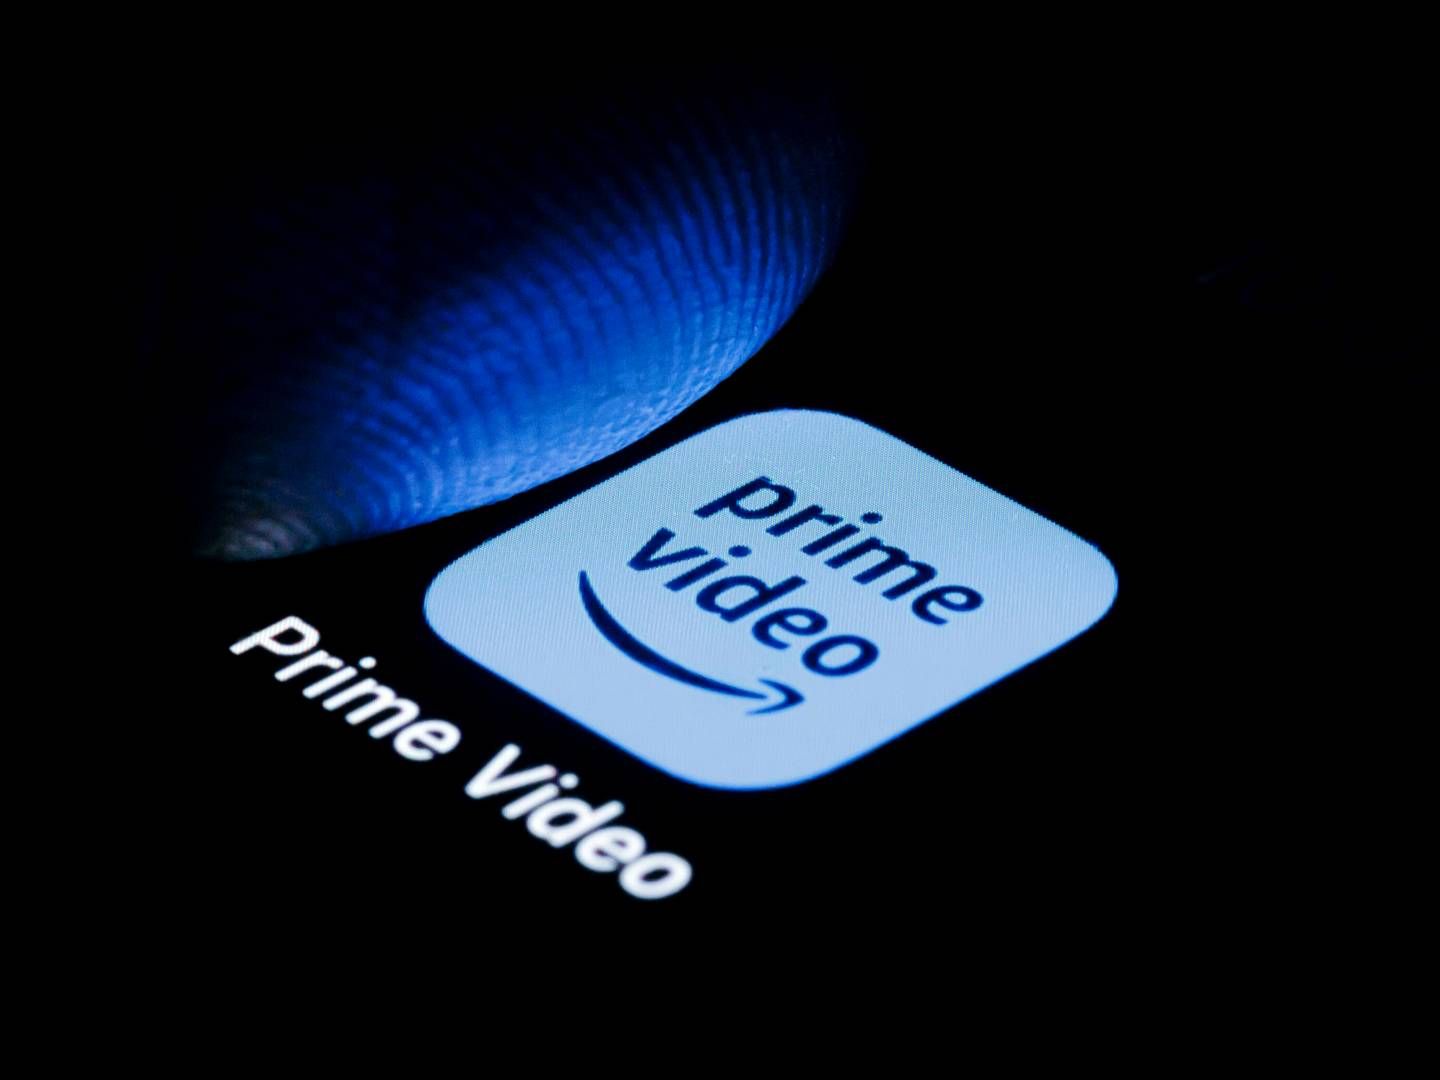 Amazon Video Prime oplever, at lokalt indhold trækker kunder til, fortæller nordisk chef. | Foto: Thomas Trutschel/AP/Ritzau Scanpix